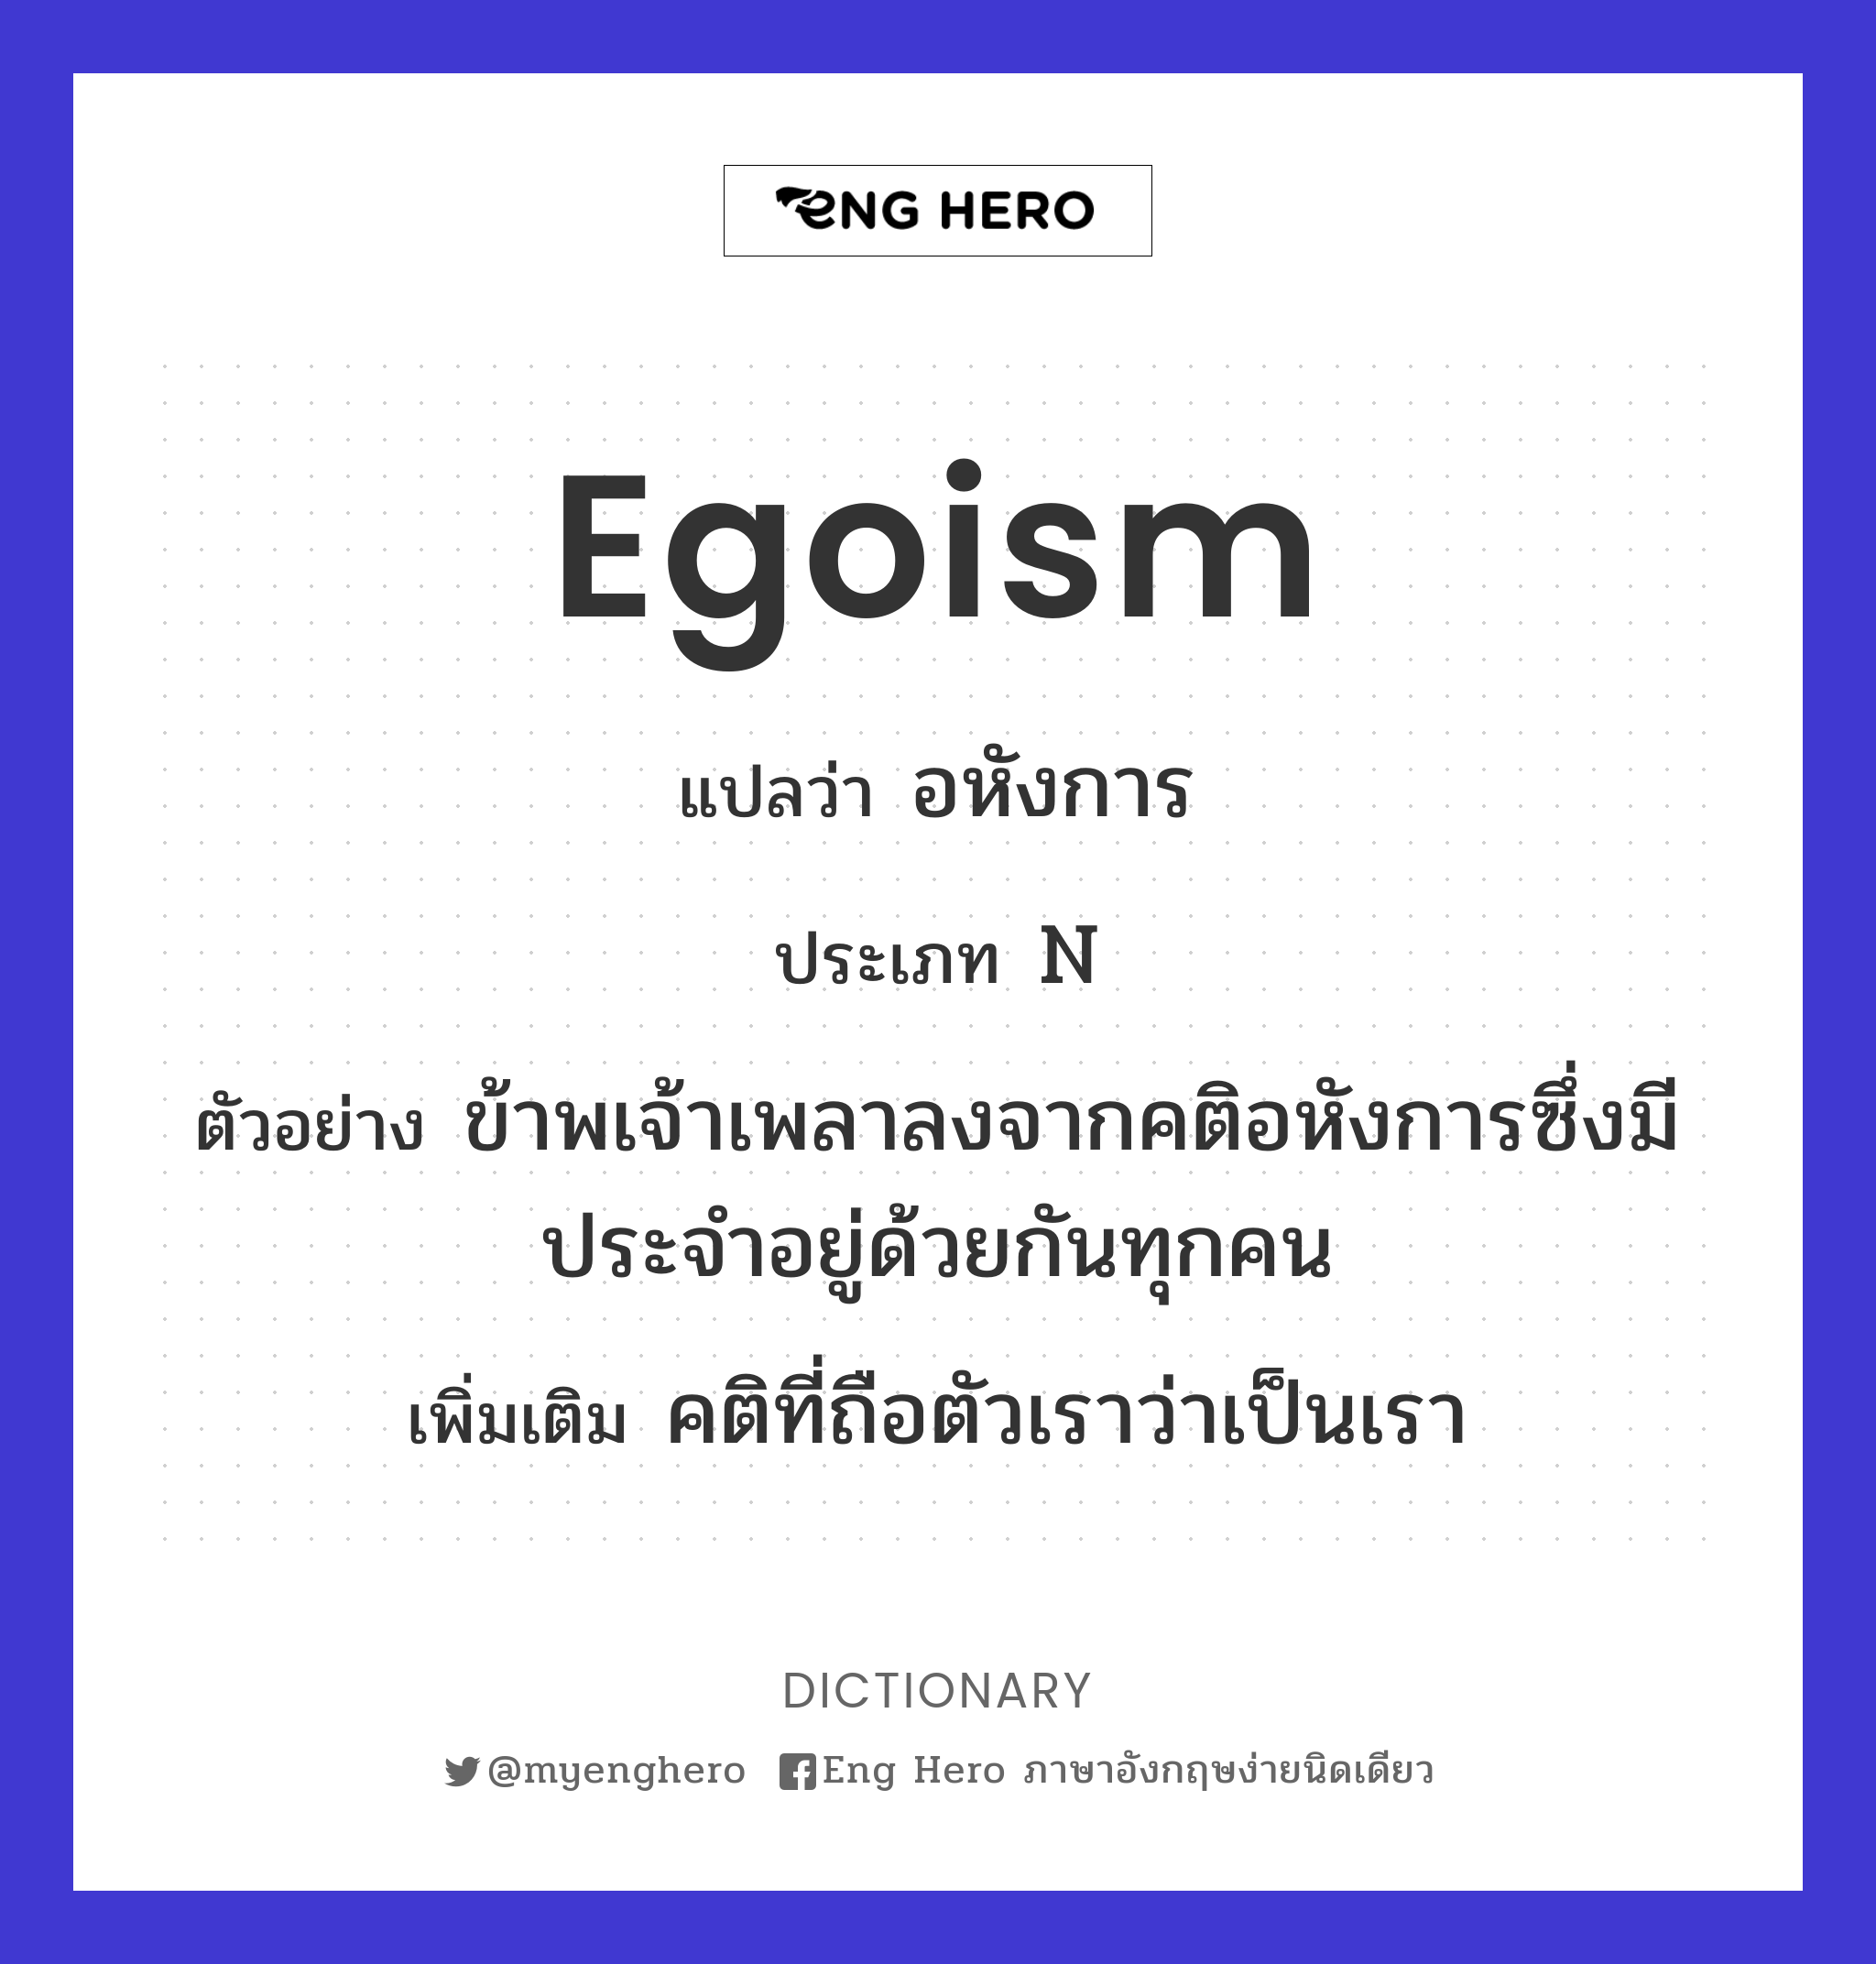 egoism